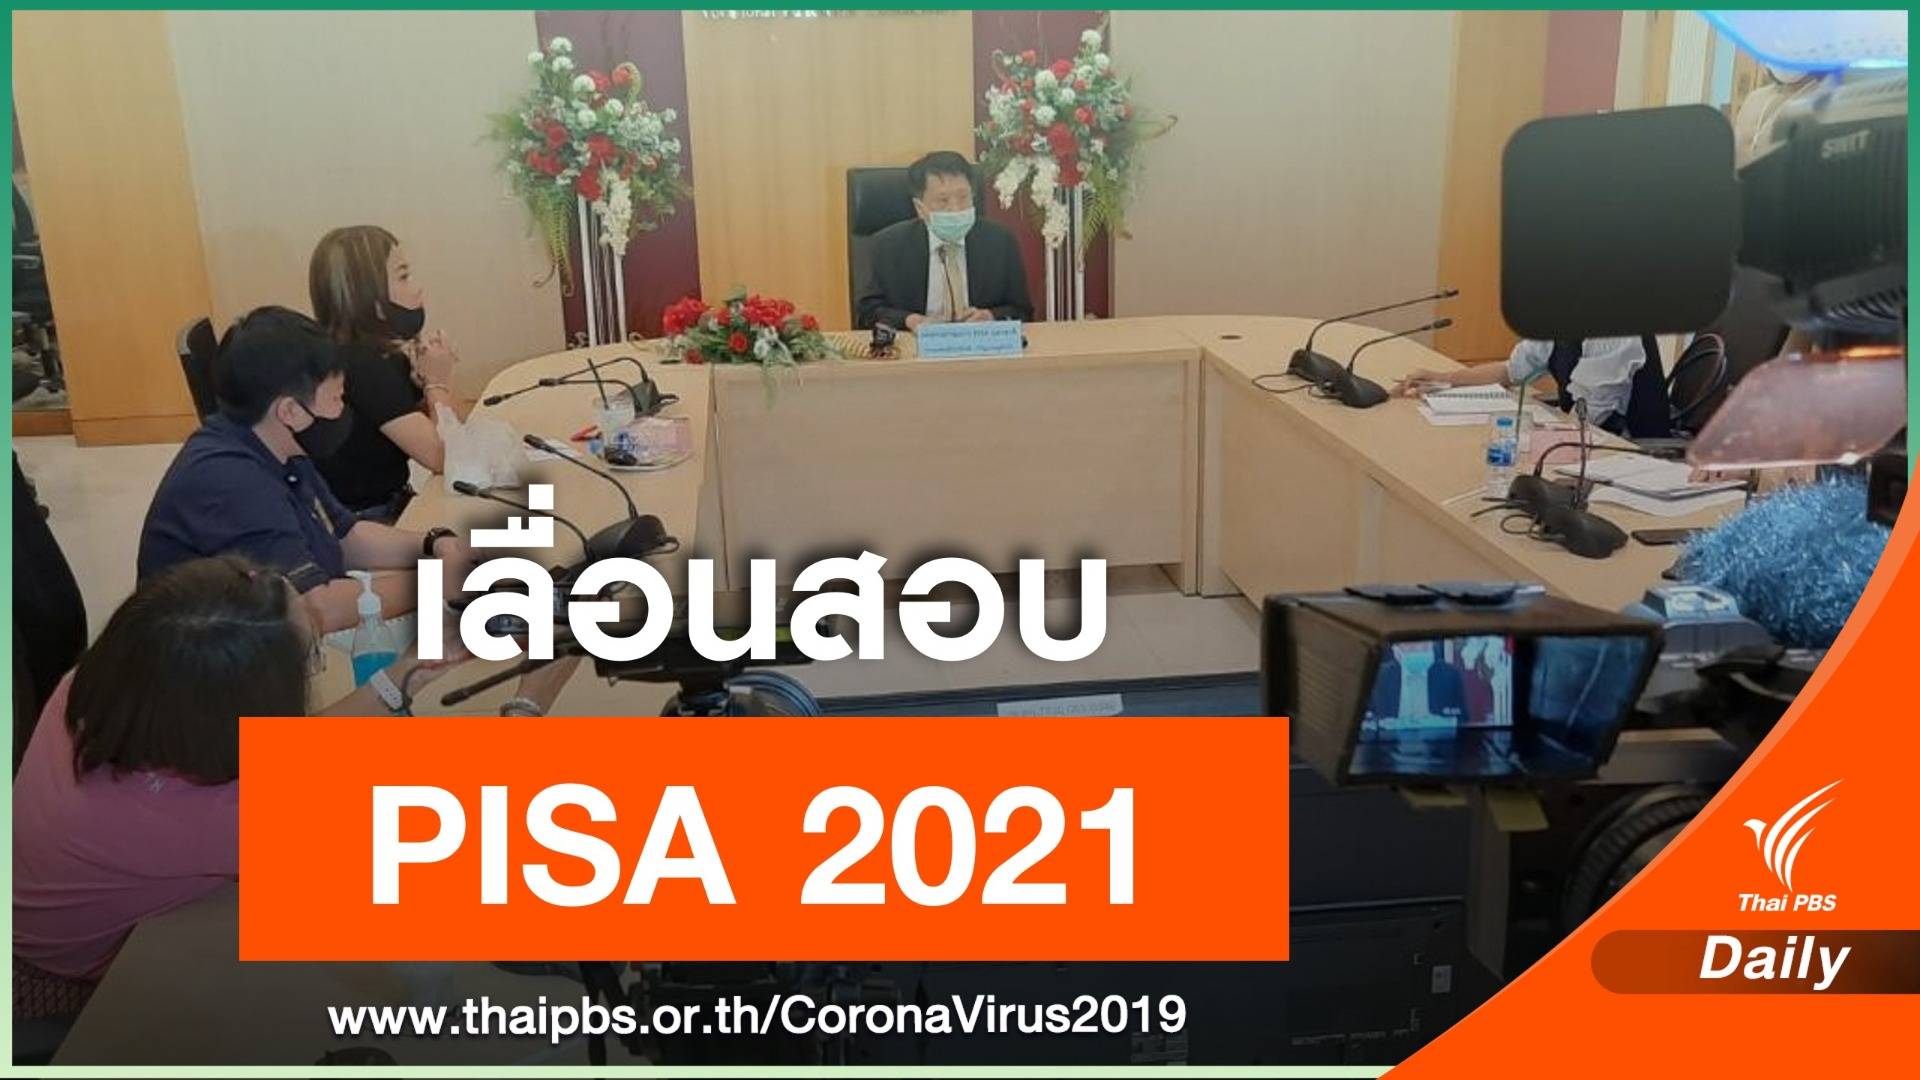 พิษ COVID-19 เลื่อนสอบ PISA 2021 เป็น PISA 2022   